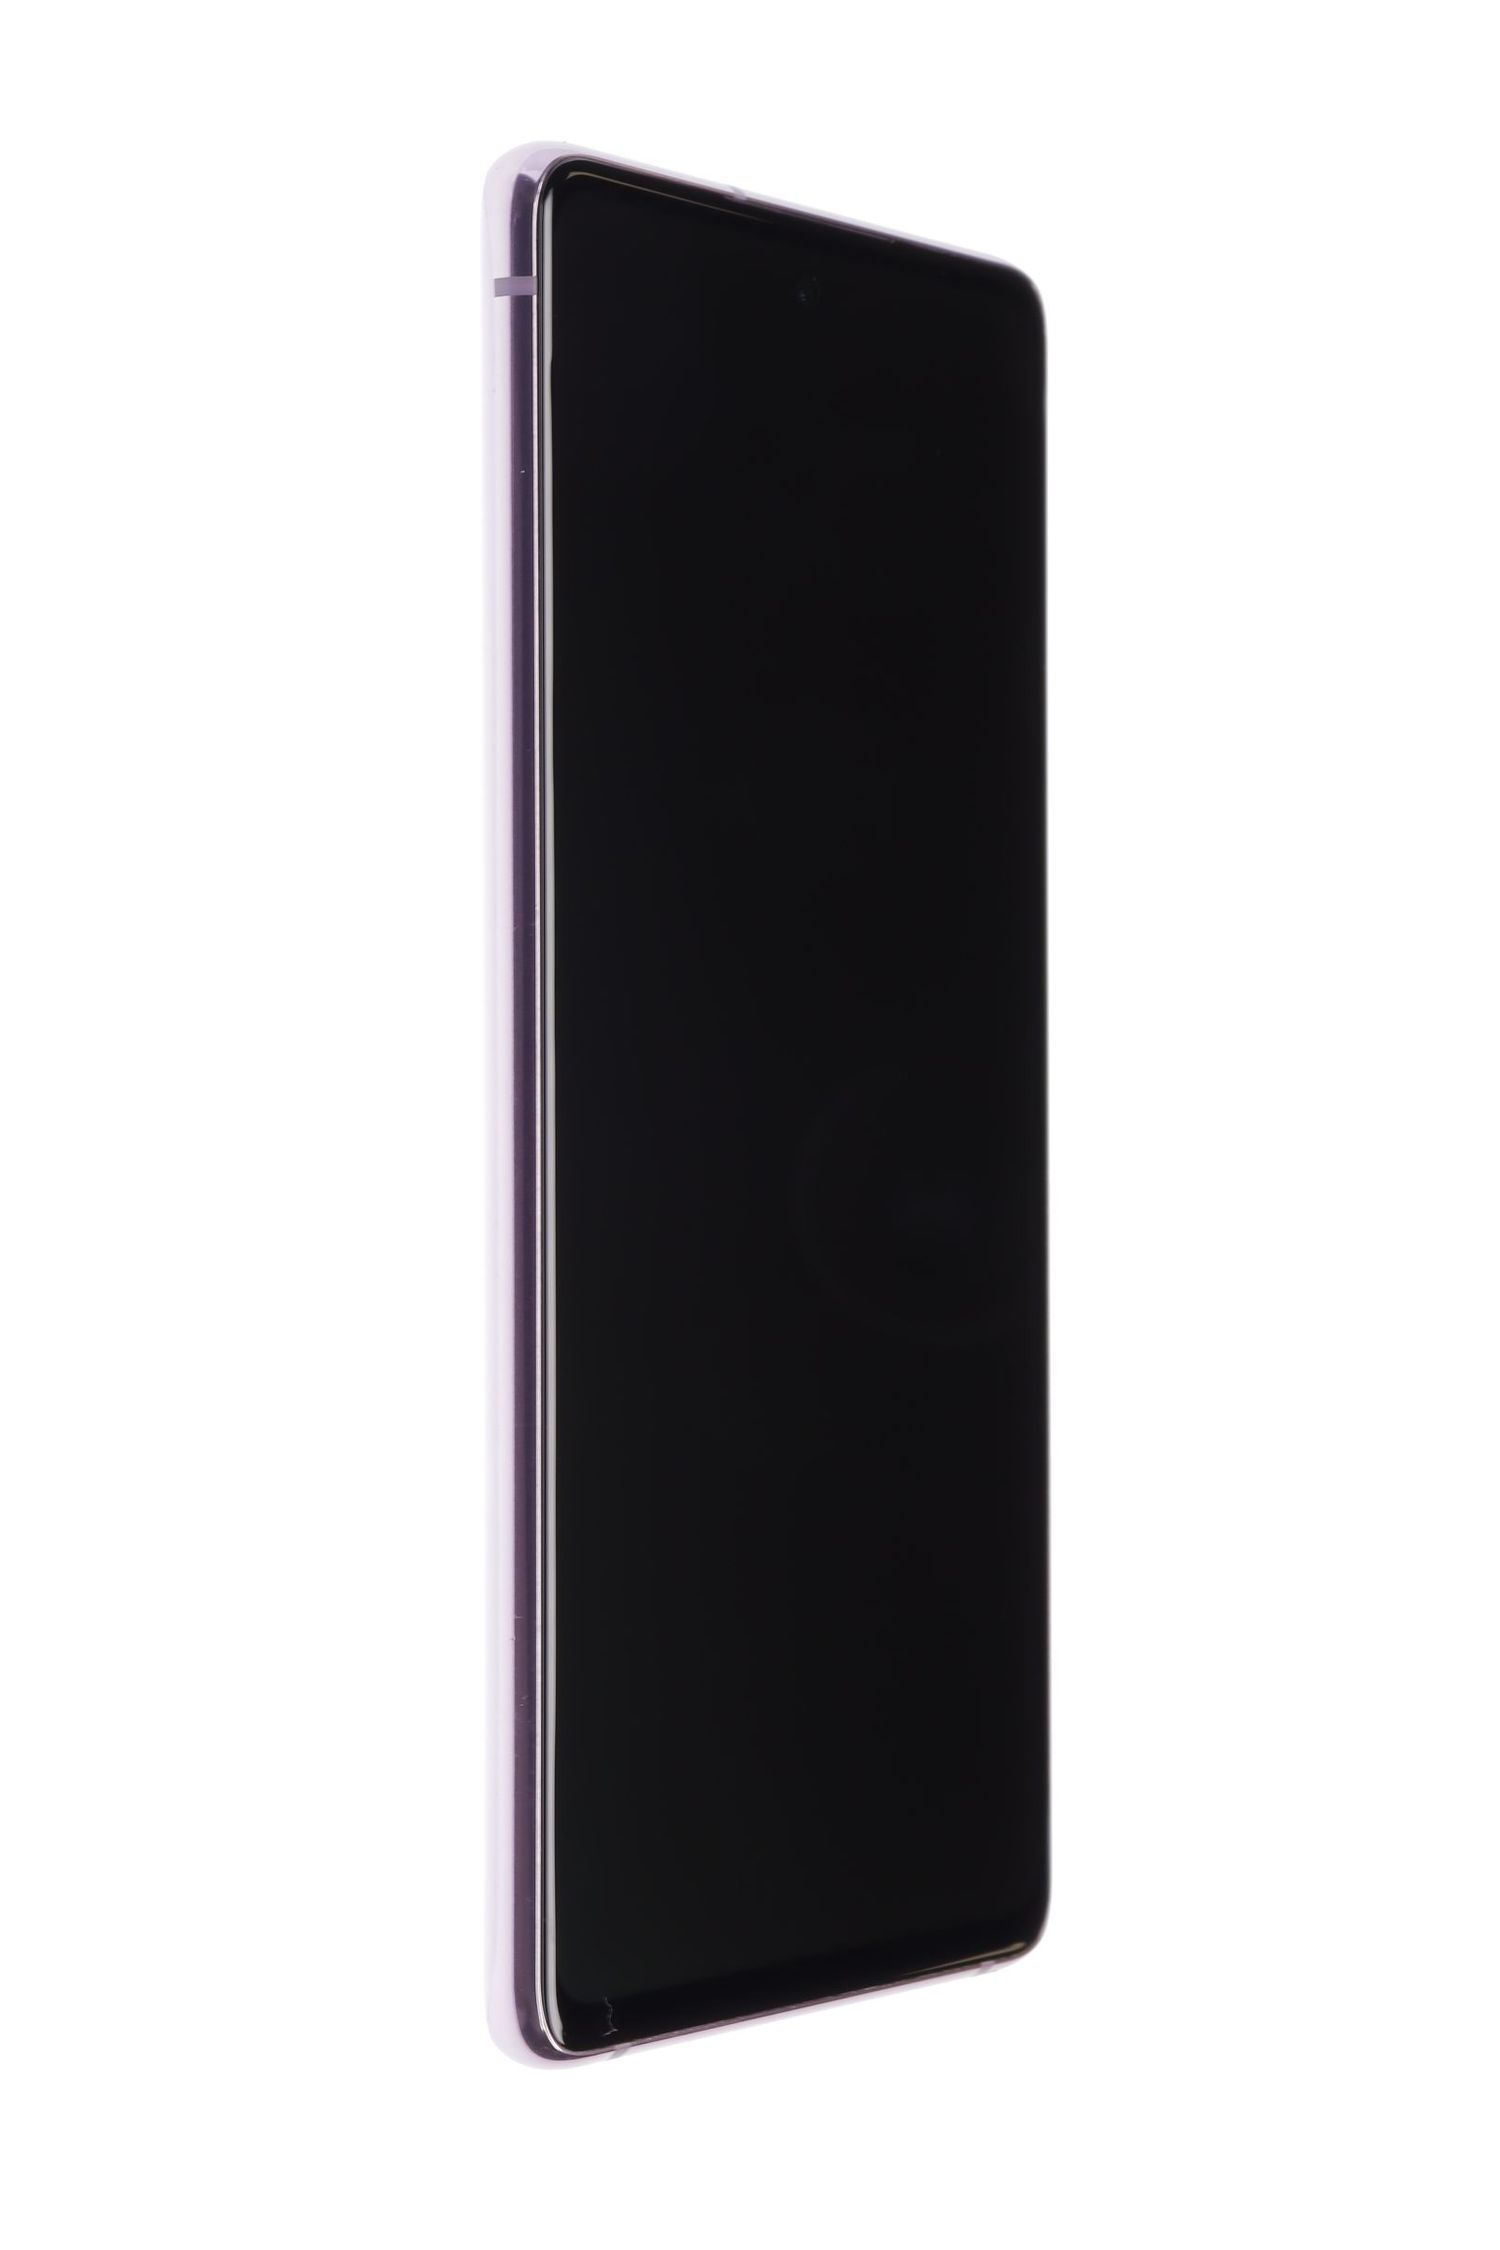 Κινητό τηλέφωνο Samsung Galaxy S20 FE Dual Sim, Cloud Lavender, 128 GB, Excelent